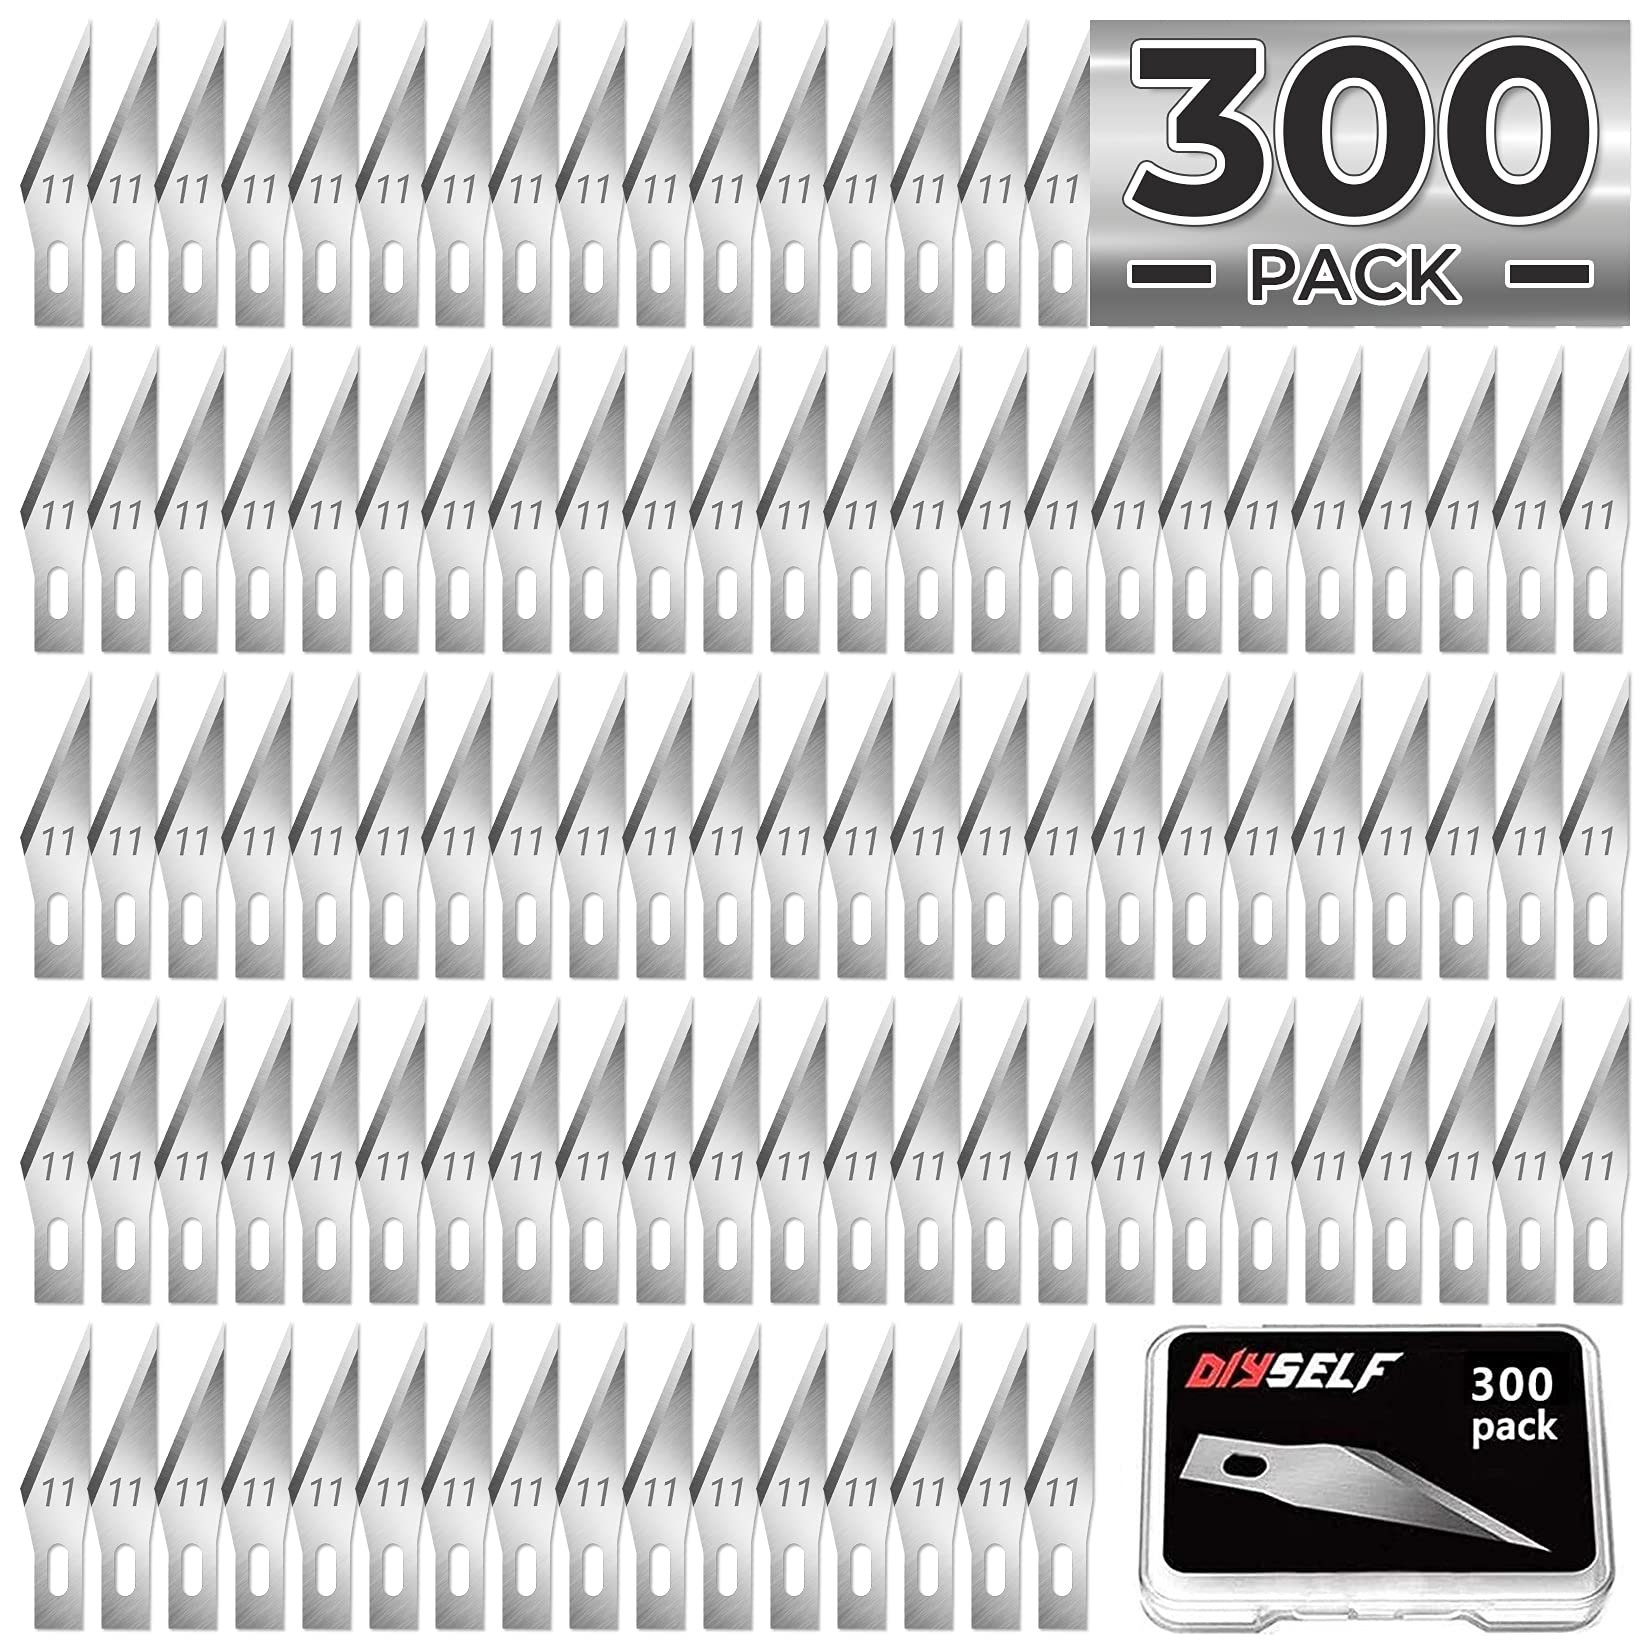 DIYSELF 300 PCS Exacto Knife Blades 11, High Carbon Steel Exacto Blades,  Craft Knife Blades, 11